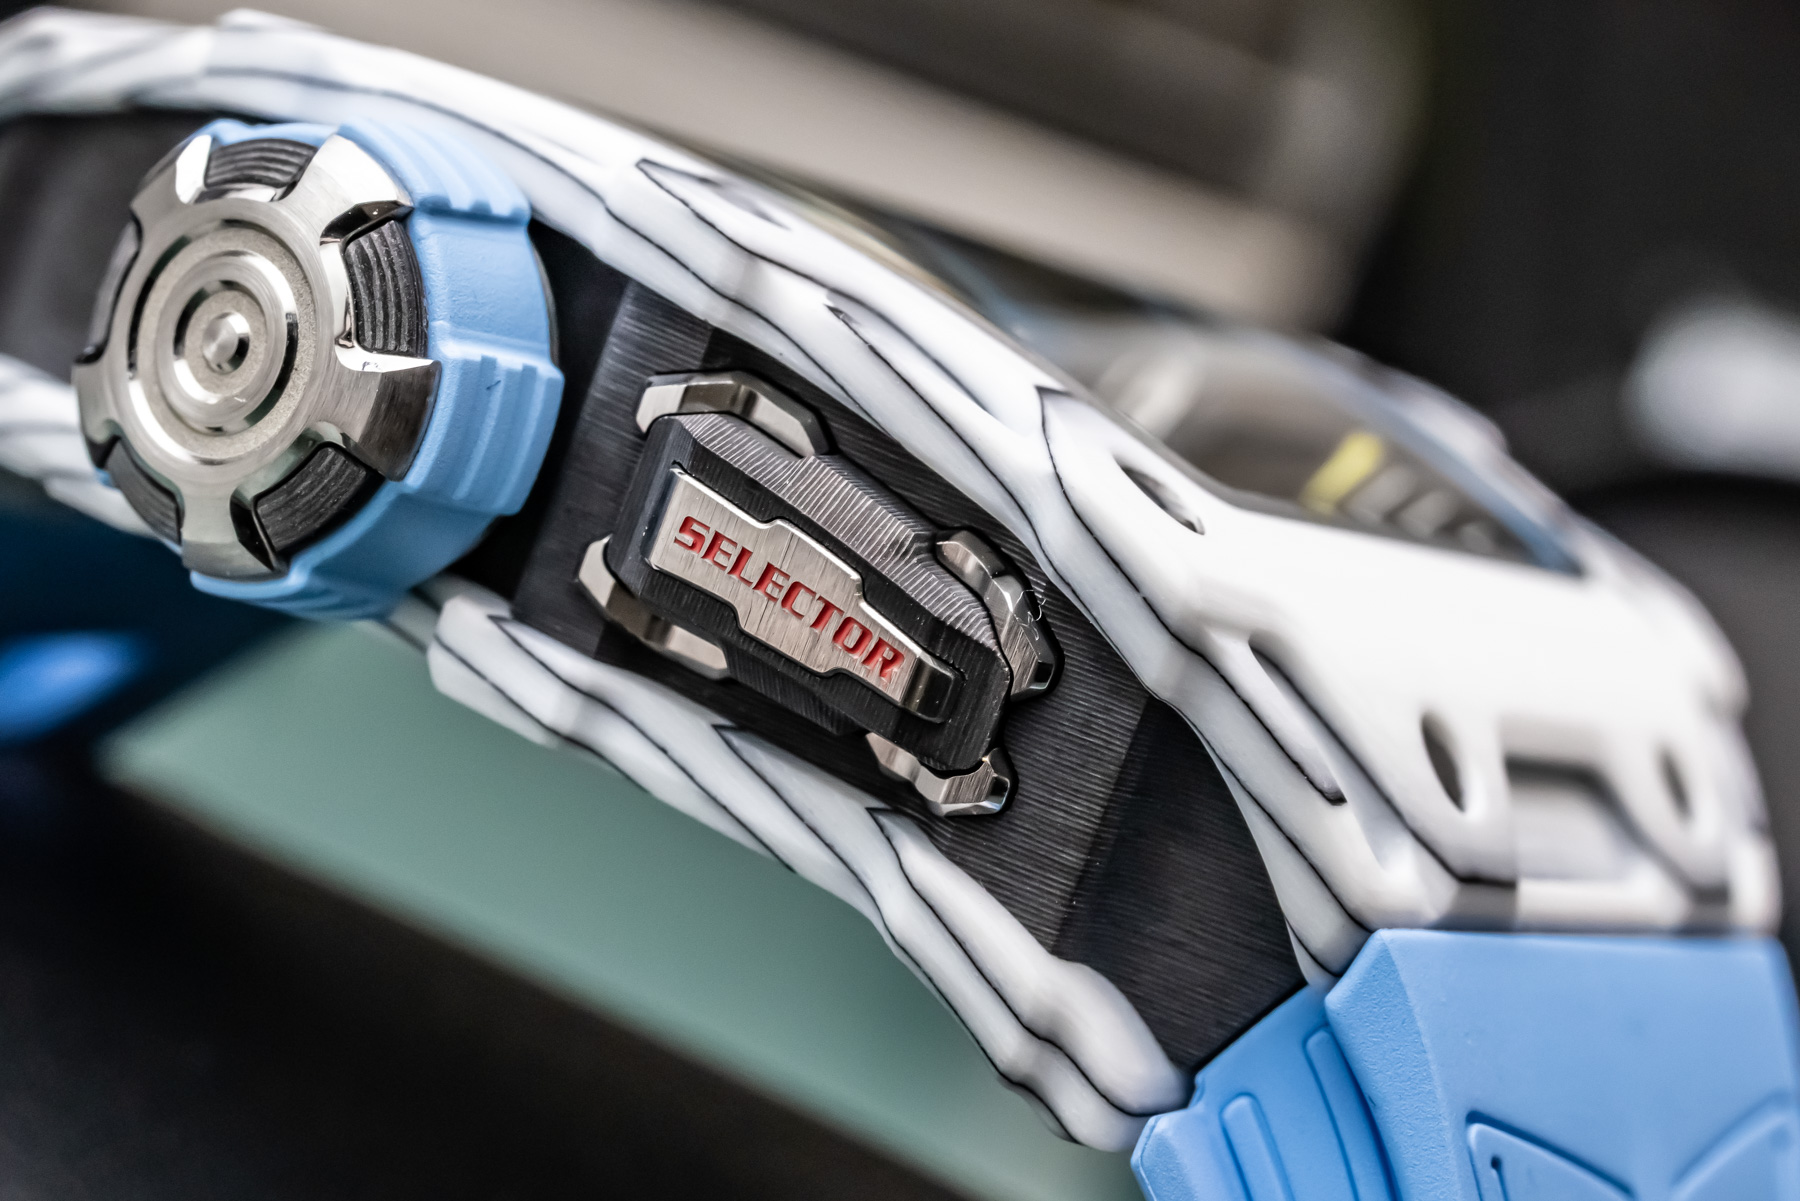 Часы Richard Mille RM 35-03 Rafael Nadal с новой системой автоподзавода